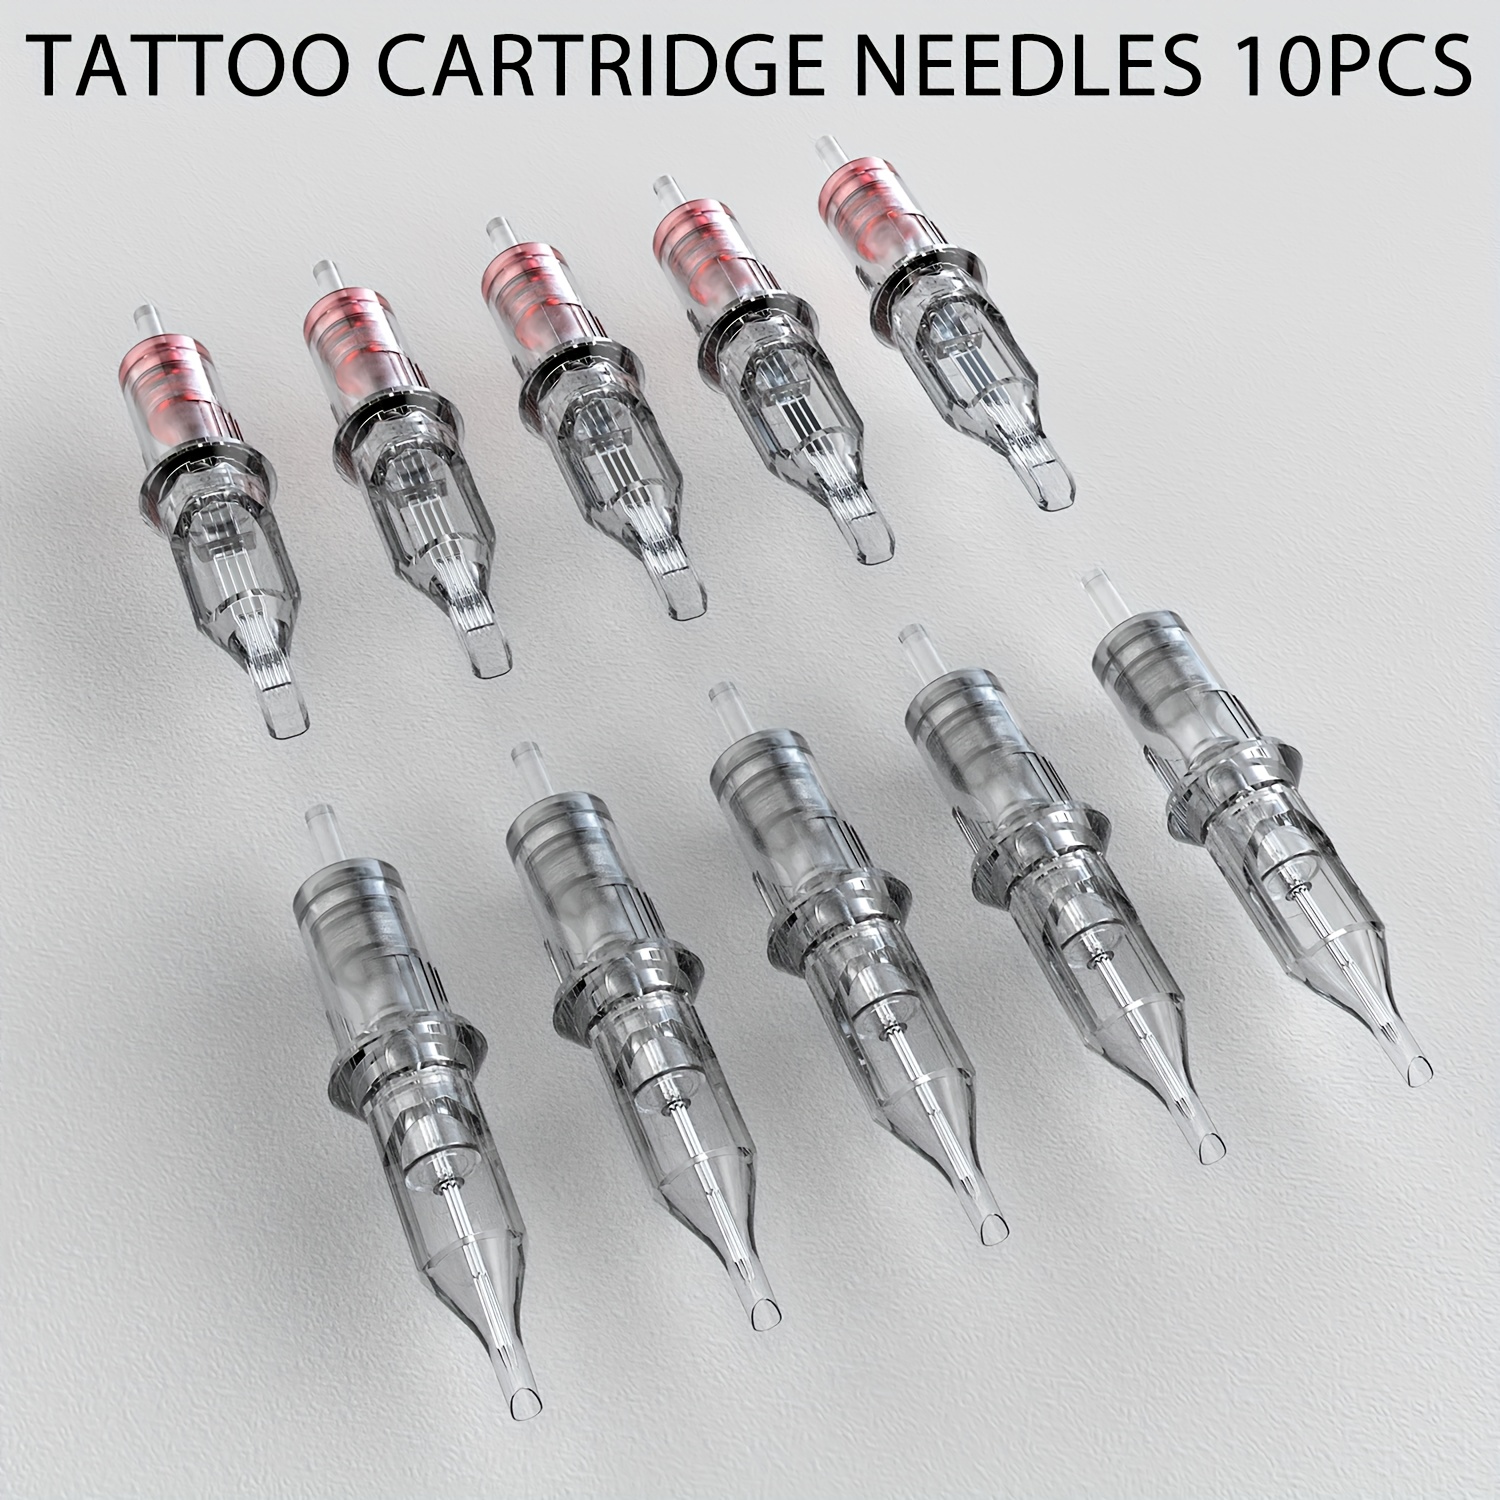 Wormhole Tattoo Kit Complete Tattoo Pen Kit Rotary Tattoo Machine Kit with  20pcs Tattoo Cartridge Needles, 10pcs Tattoo Inks Tattoo Gun Kit Beginner